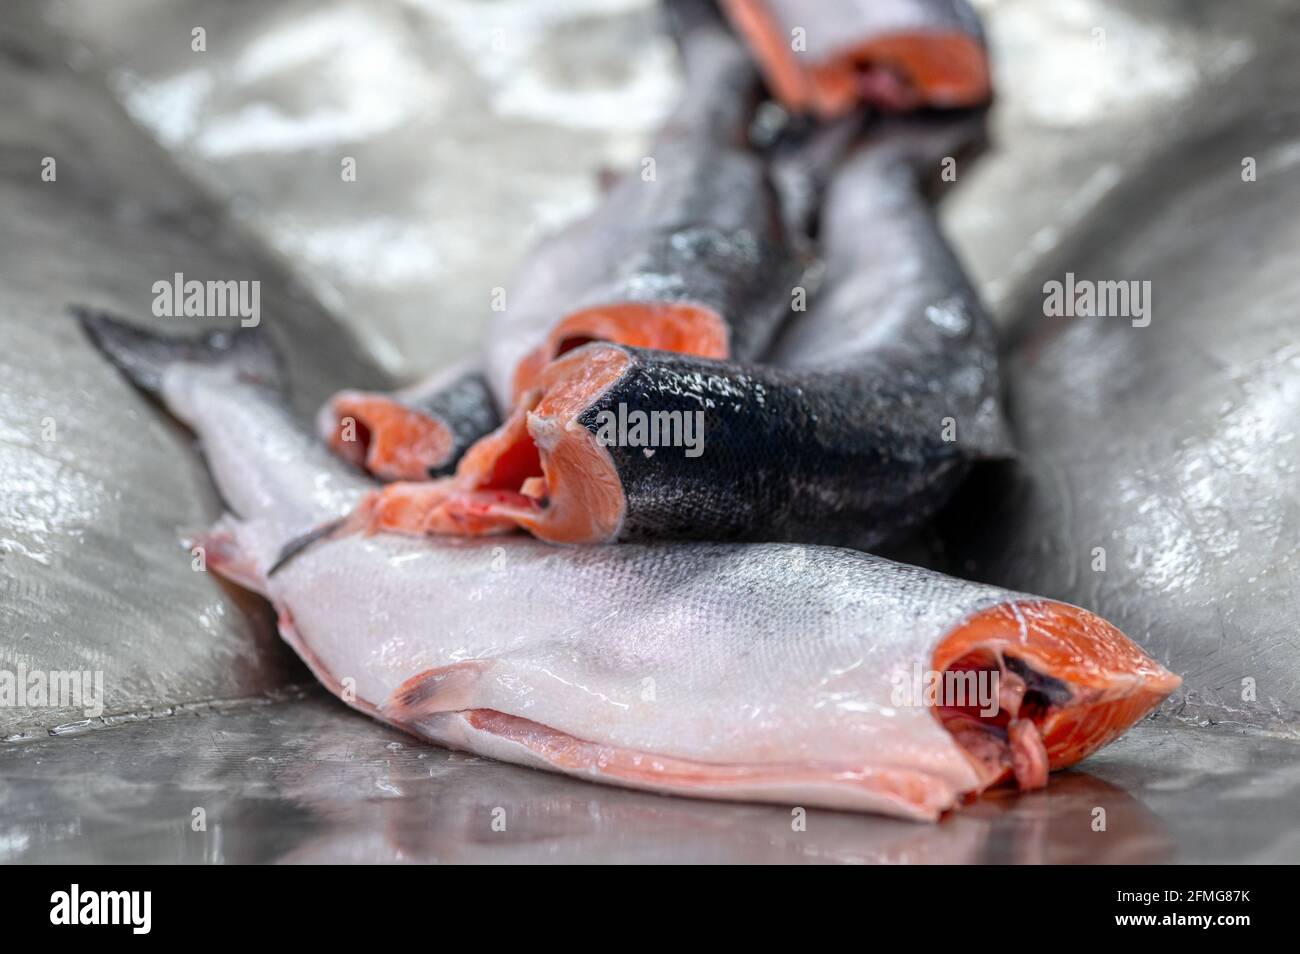 Les carcasses de saumon et de truite sans tête et évidées se trouvent sur une table métallique. Banque D'Images